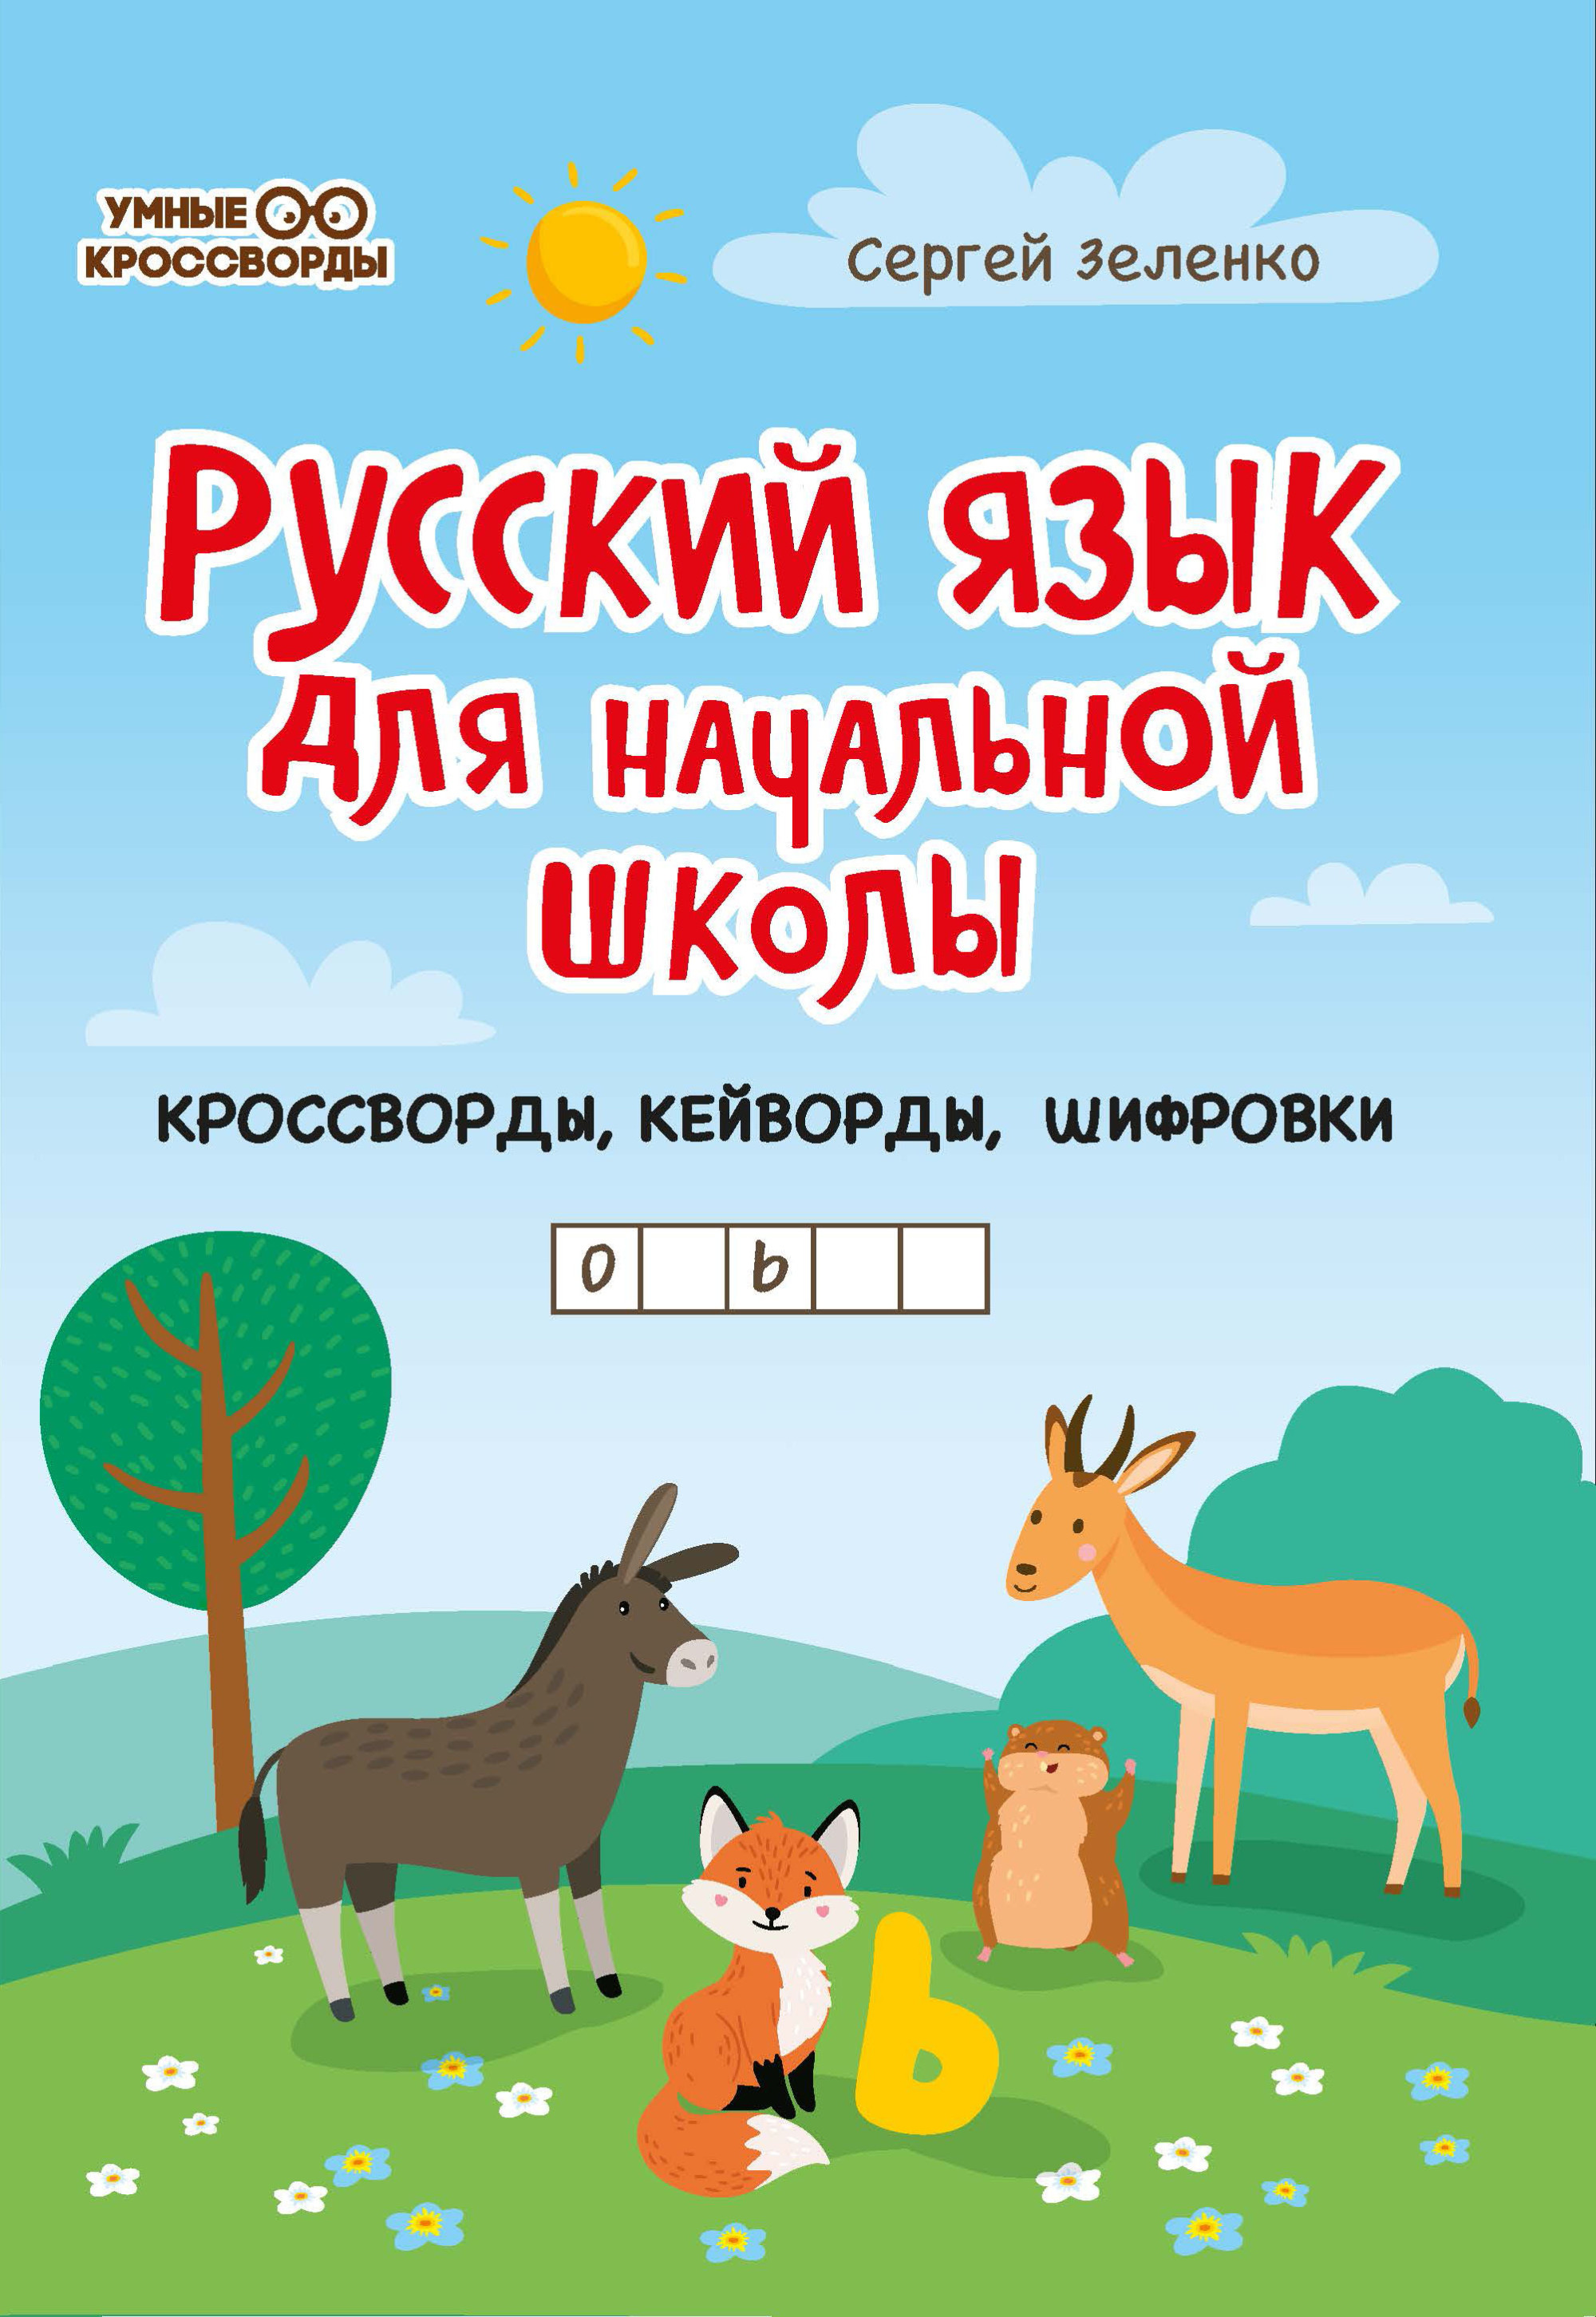 Русский язык для начальной школы: Кроссворды, кейворды, шифровки